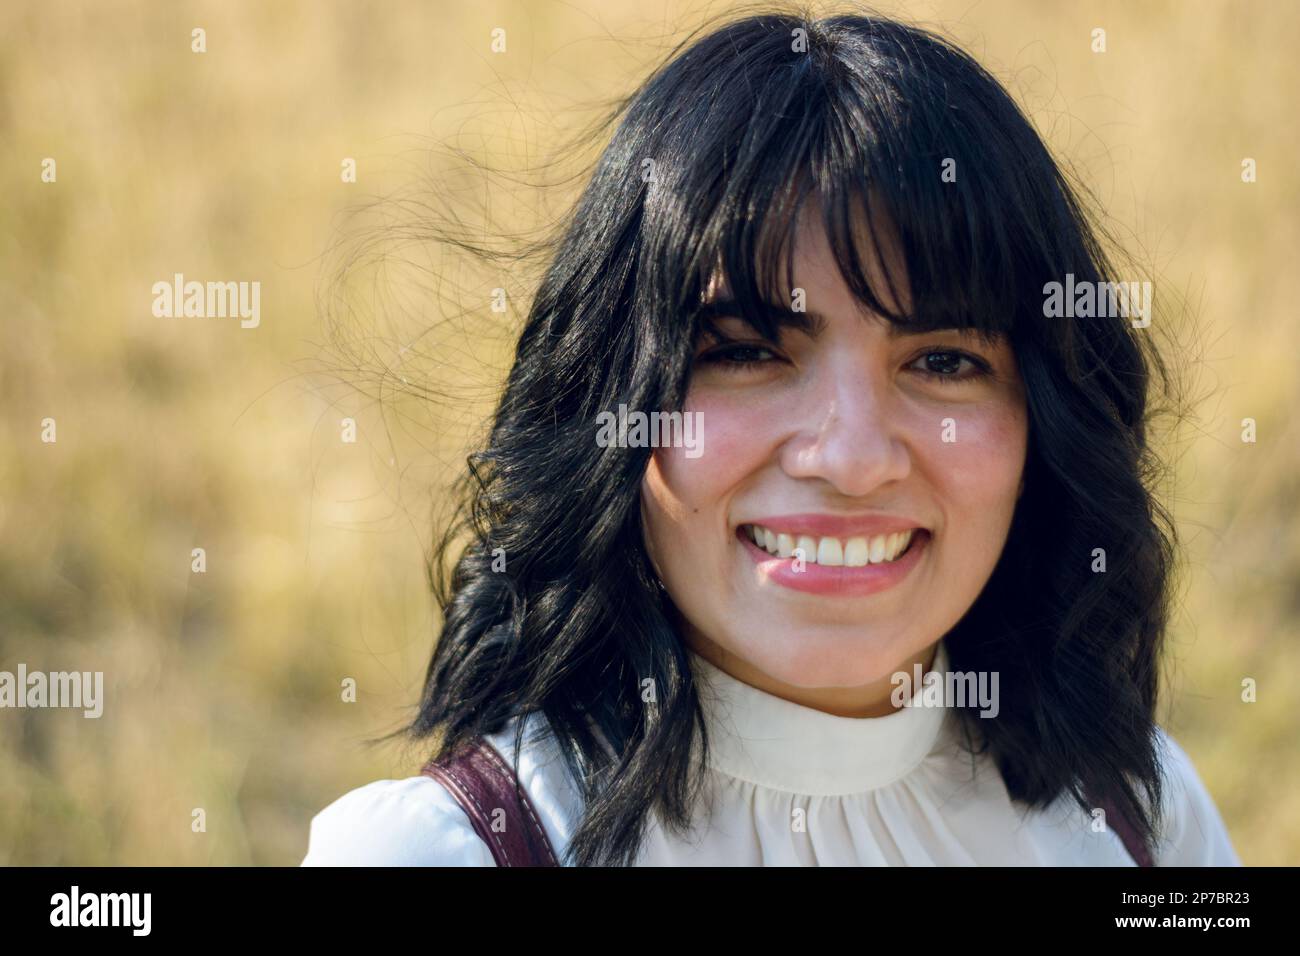 Junge lateinische Frau venezolanischer Herkunft, lächelnd mit guten Zähnen, mit kurzen schwarzen Haaren und weißen Kleidern, stand draußen, schaute in die Kamera. Stockfoto